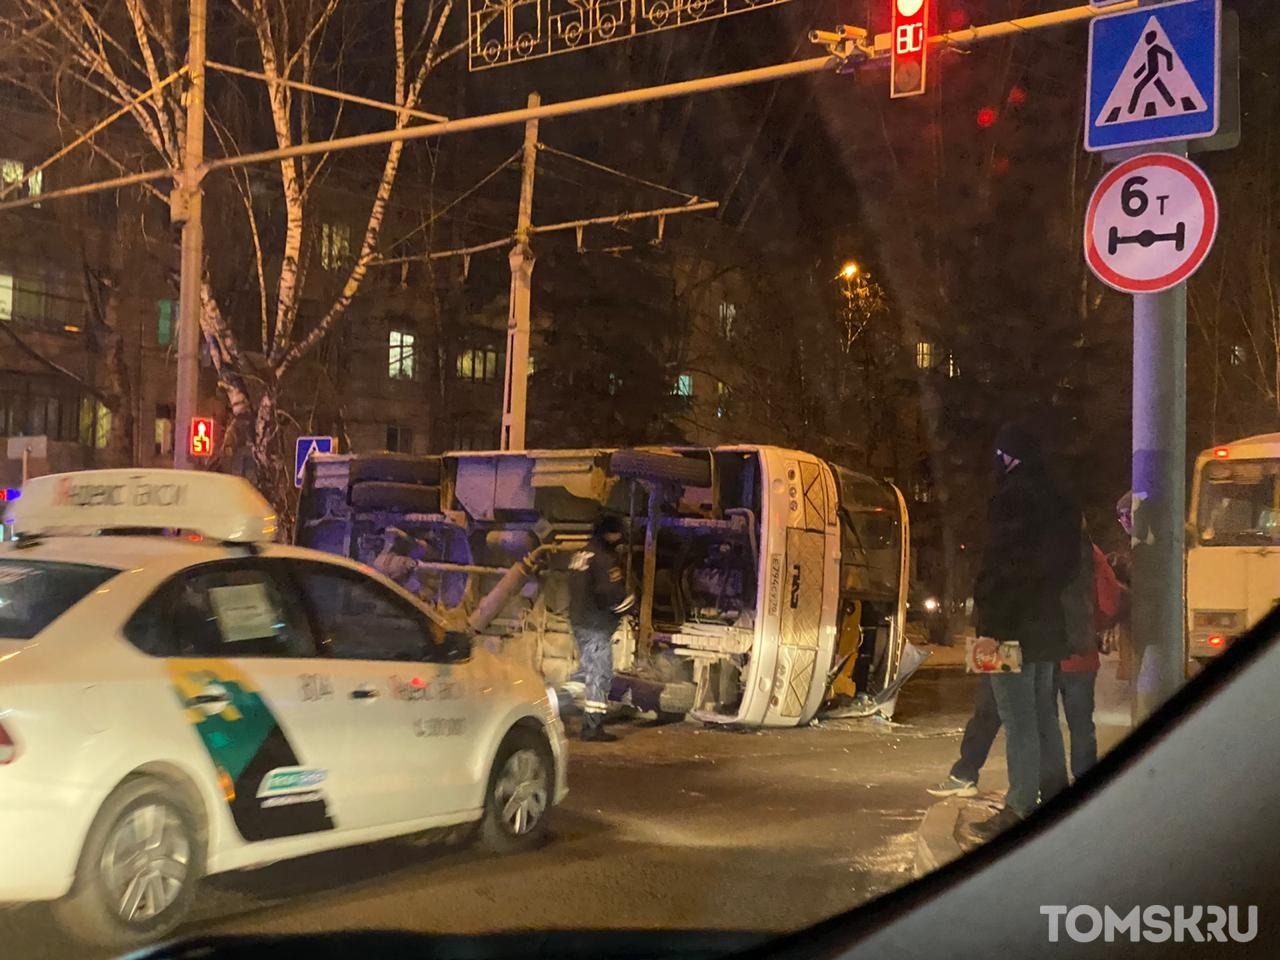 Маршрутный автобус перевернулся на перекрестке в Томске